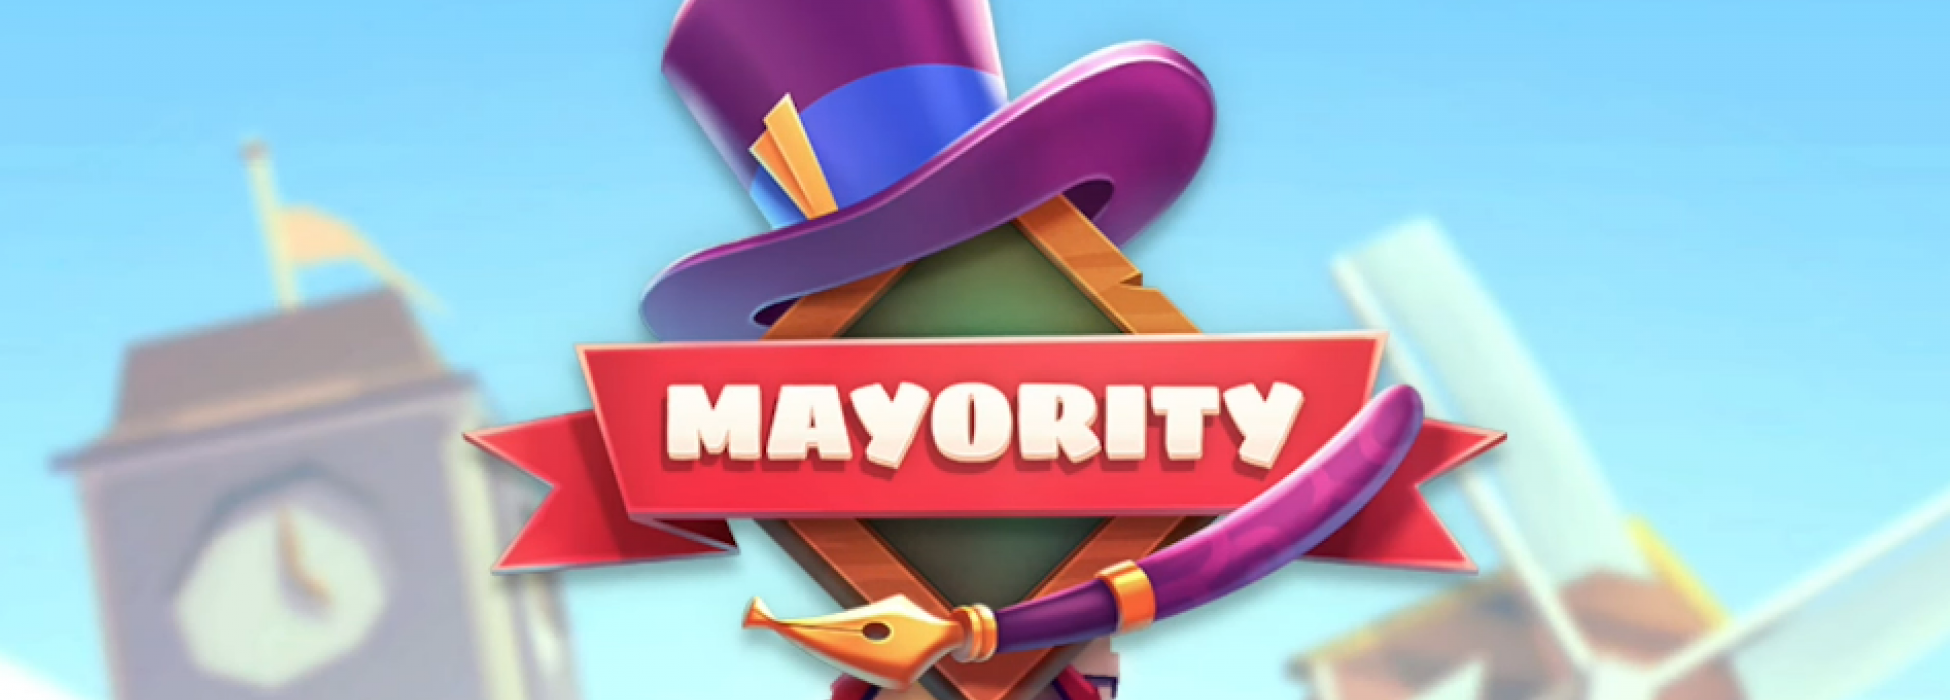 weißer Schriftzug von "Mayority" auf rotem Banner